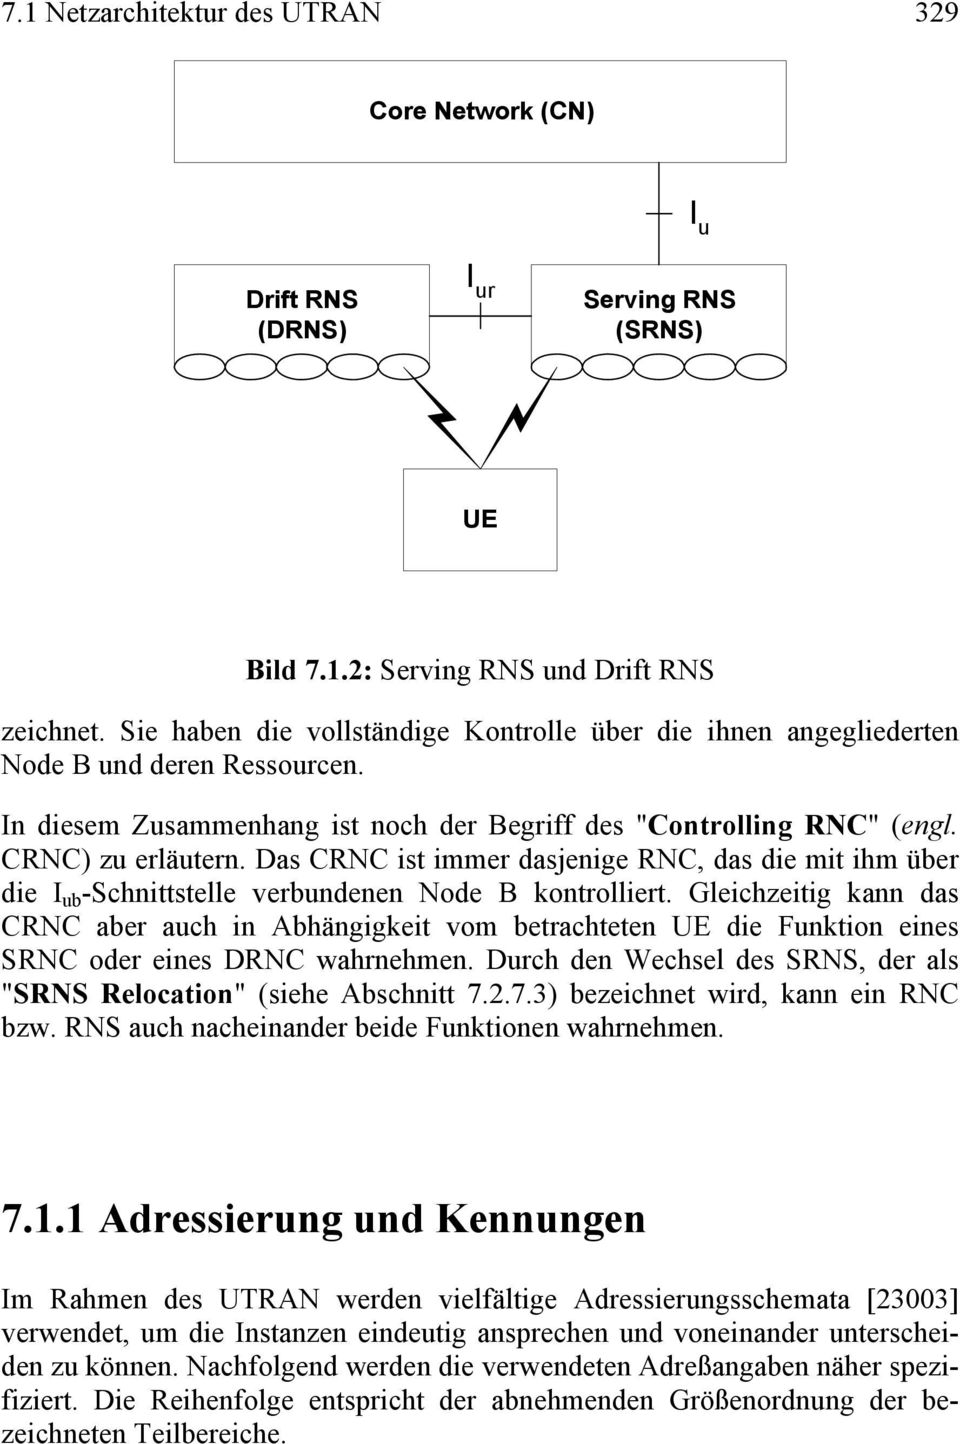 Das CRNC ist immer dasjenige RNC, das die mit ihm über die I ub -Schnittstelle verbundenen Node B kontrolliert.